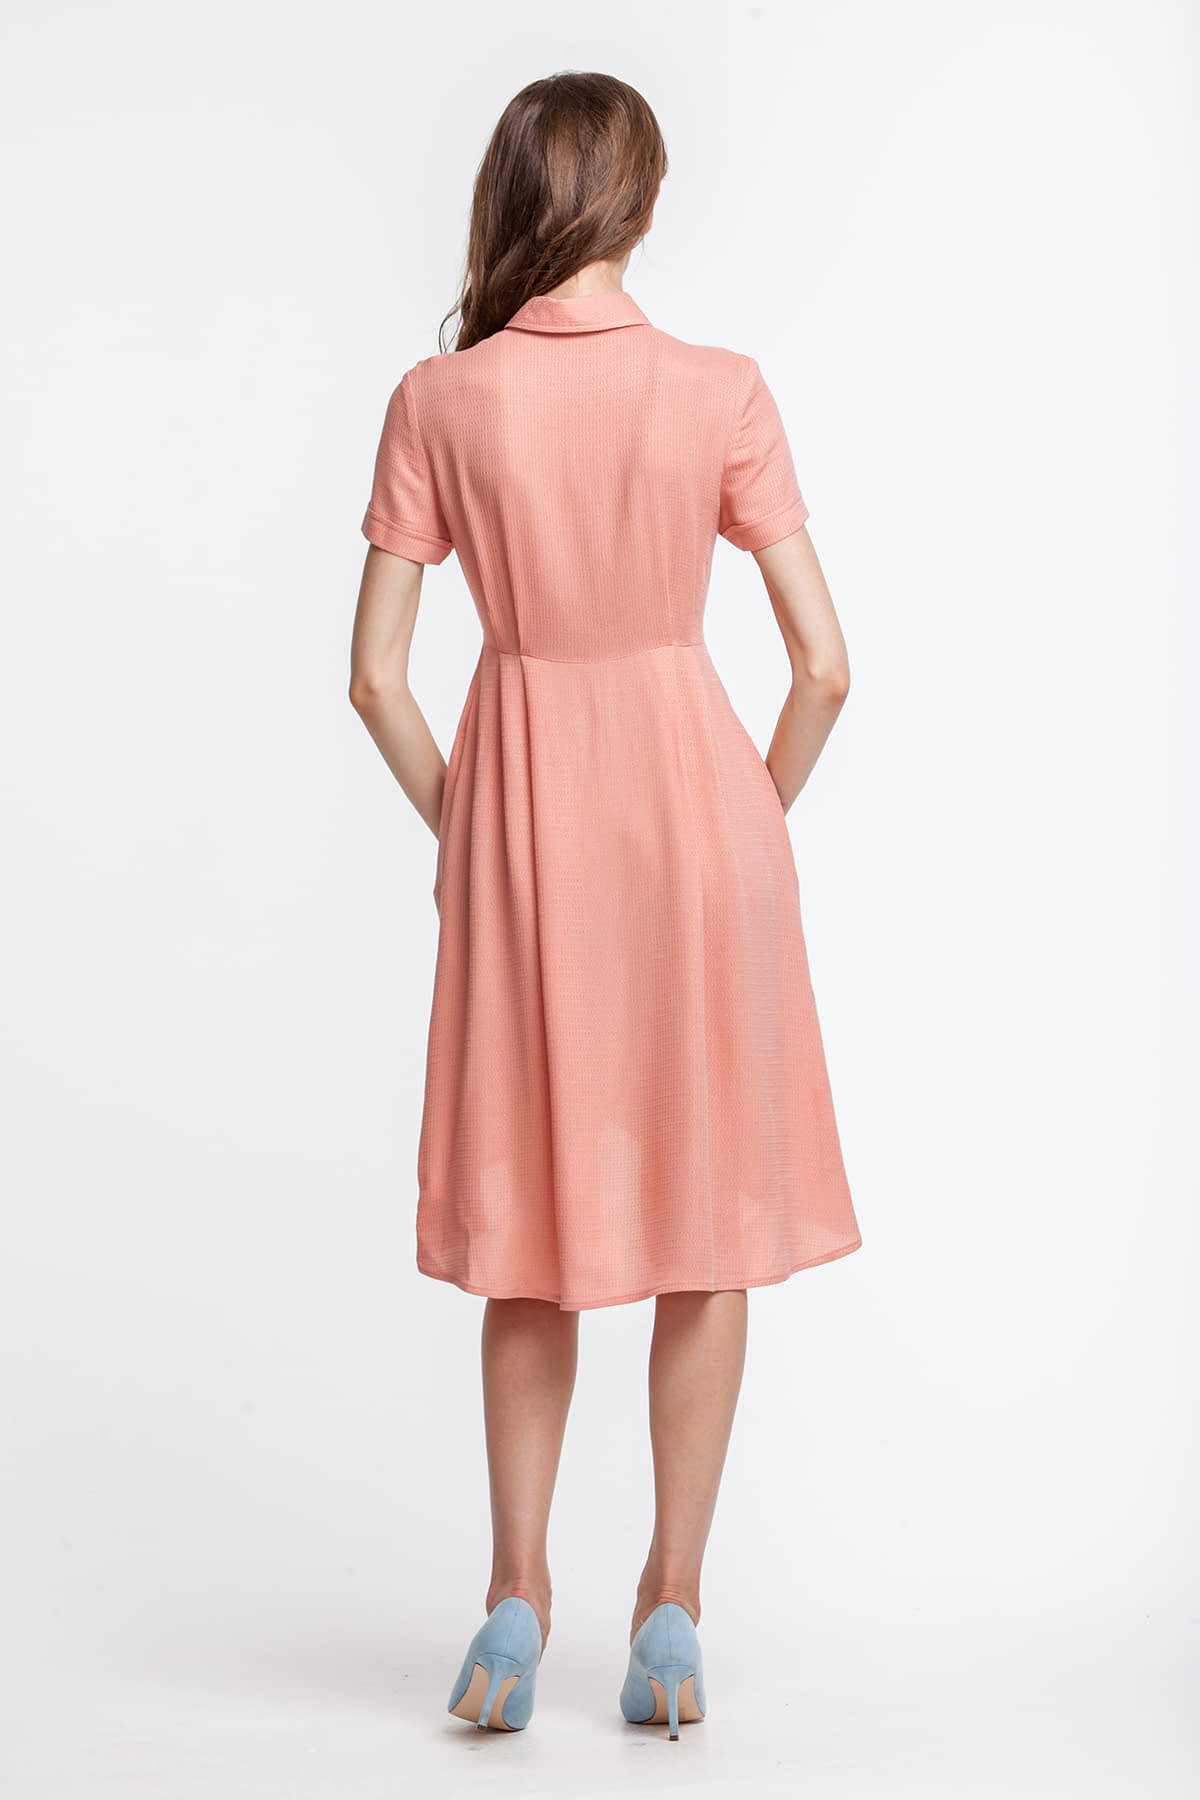 Платье персикового цвета, с рубашечным верхом, photo 3